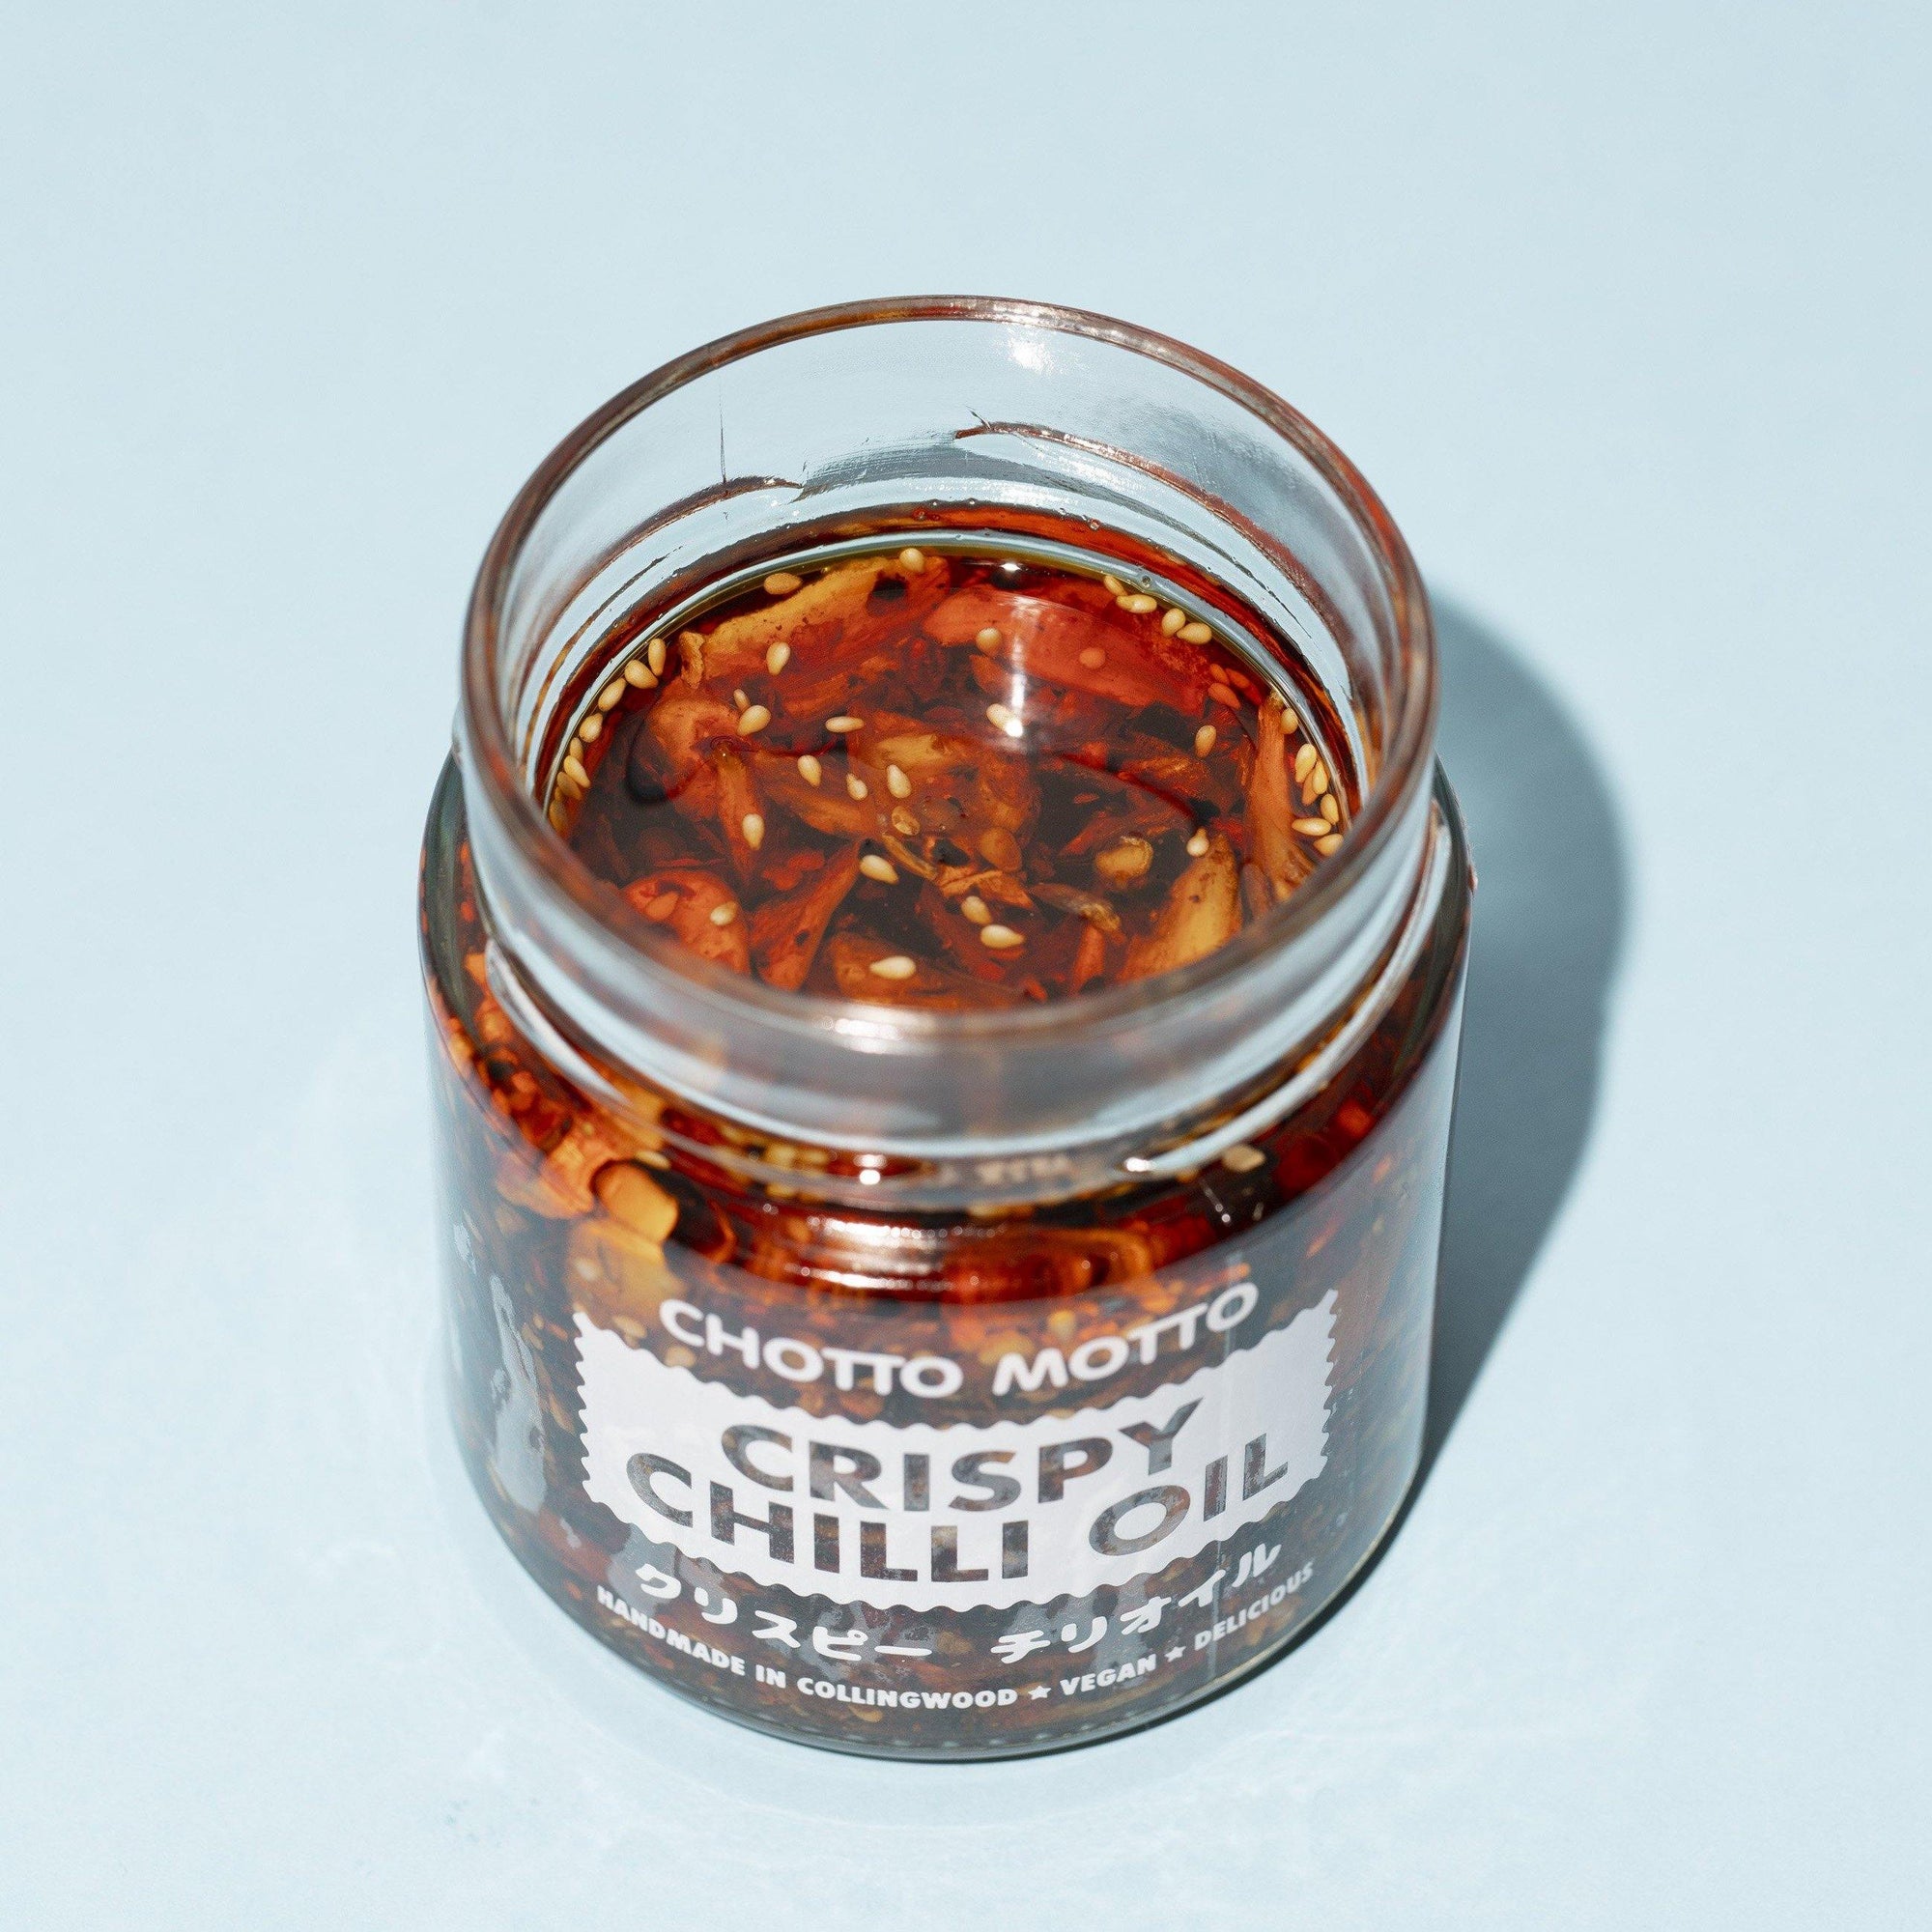 Crispy Chilli Oil - Chotto Motto